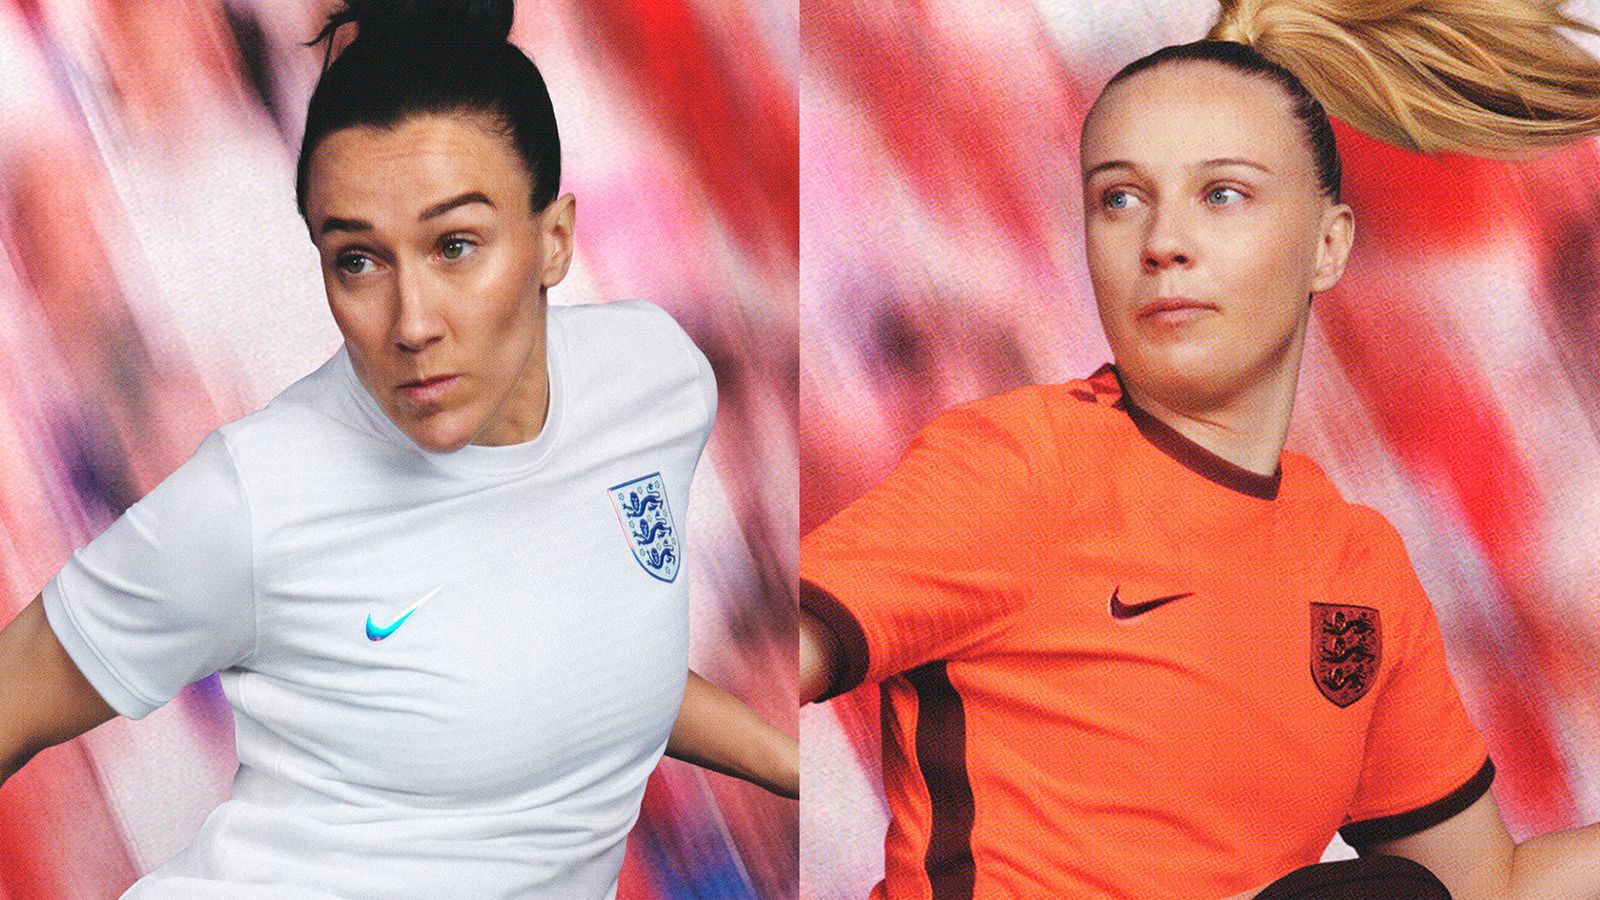 Championnats d’Europe féminins 2022 : les femmes d’Angleterre dévoilent de nouveaux uniformes à domicile et à l’extérieur pour le tournoi à domicile |  L’actualité du football